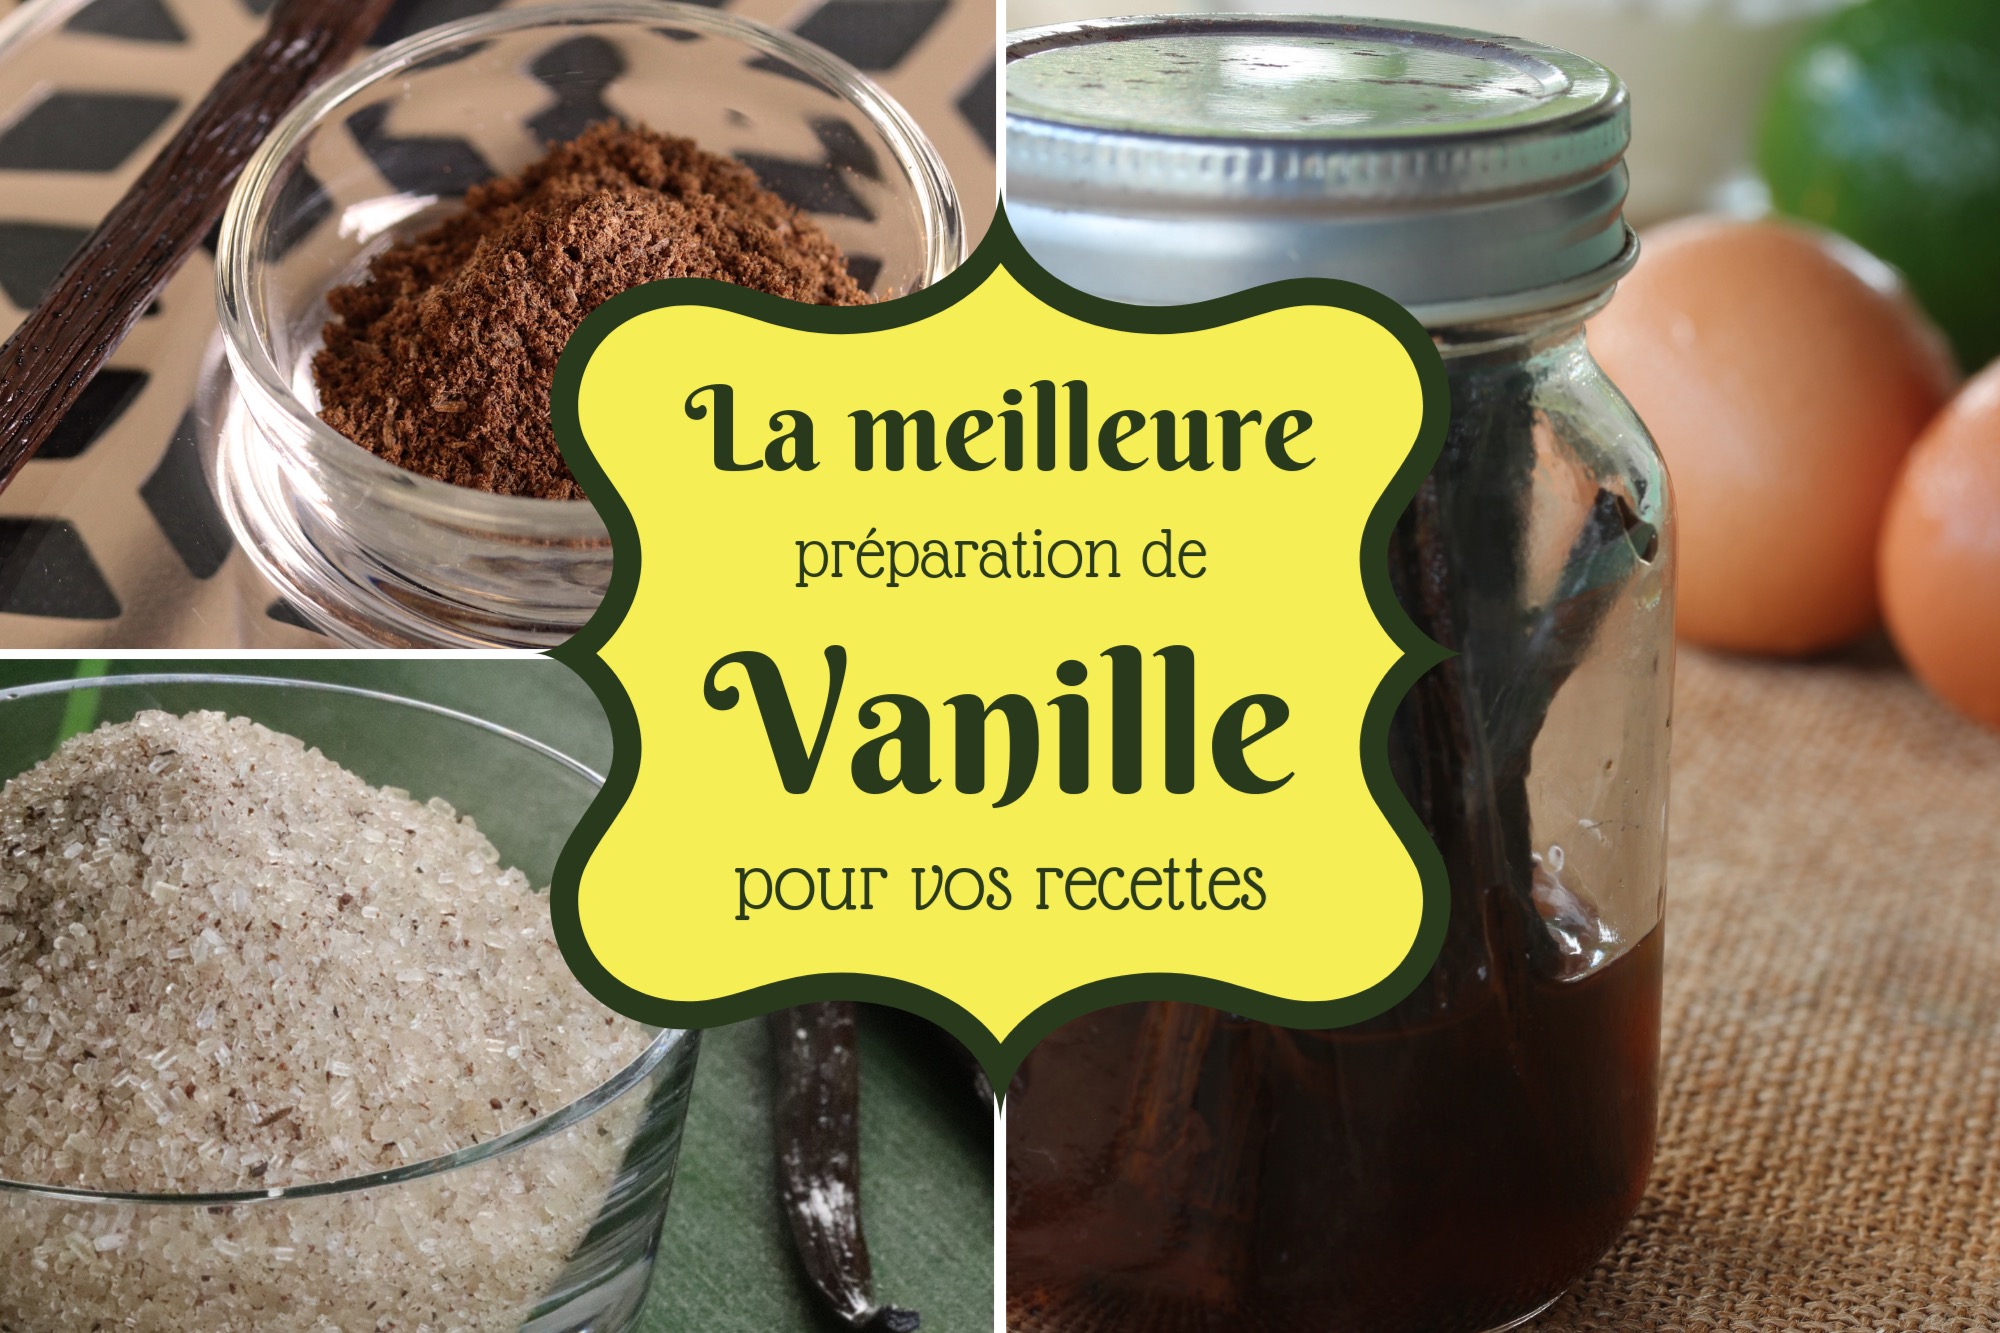 Vanille en Poudre Sucrée, Vanille et Aromes